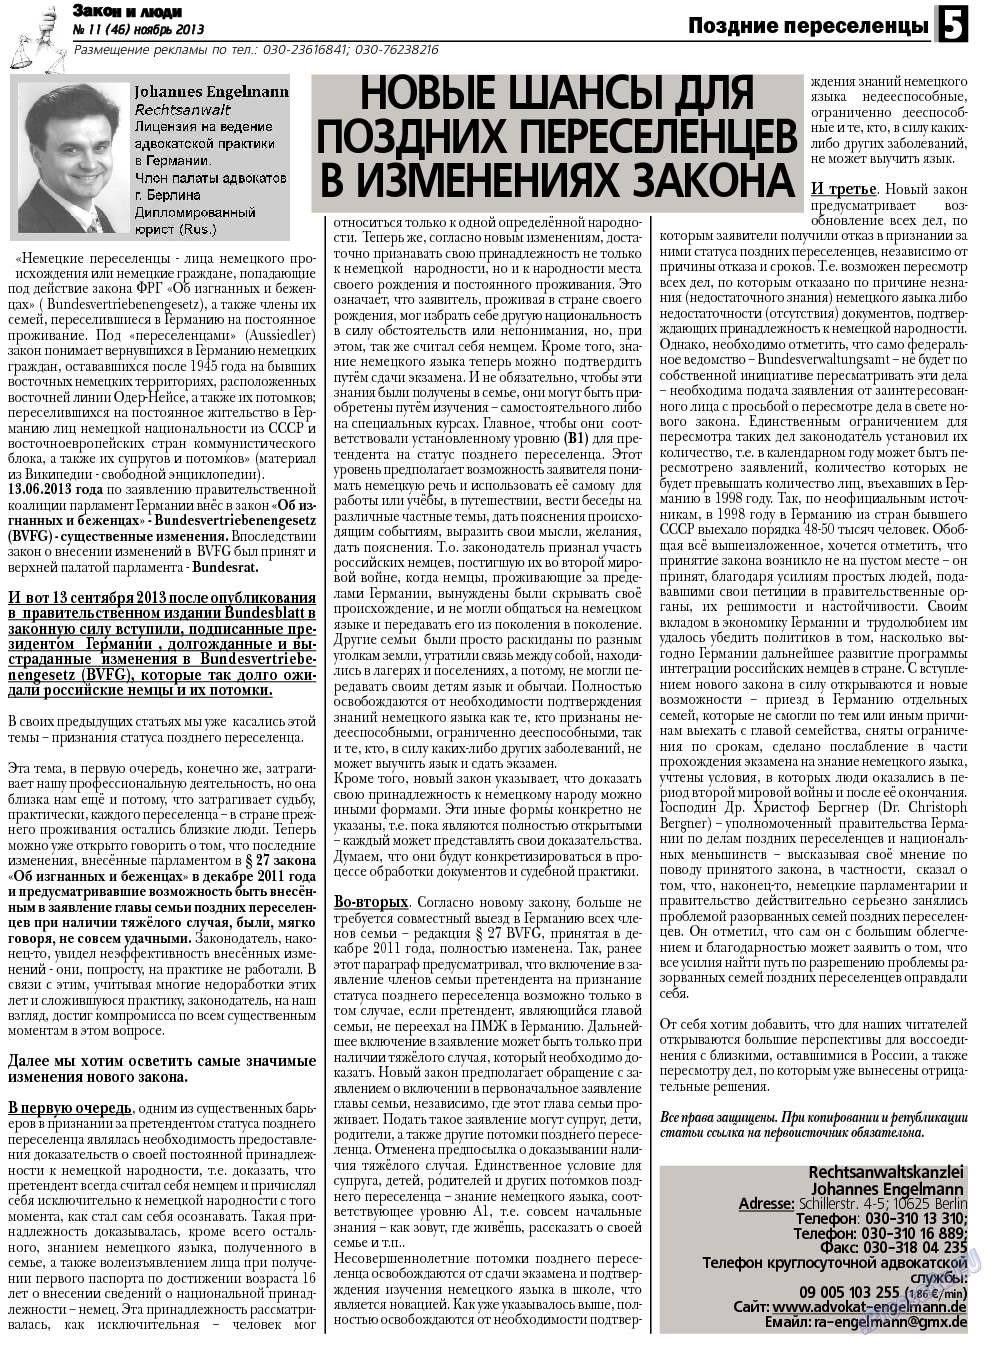 Закон и люди, газета. 2013 №11 стр.5